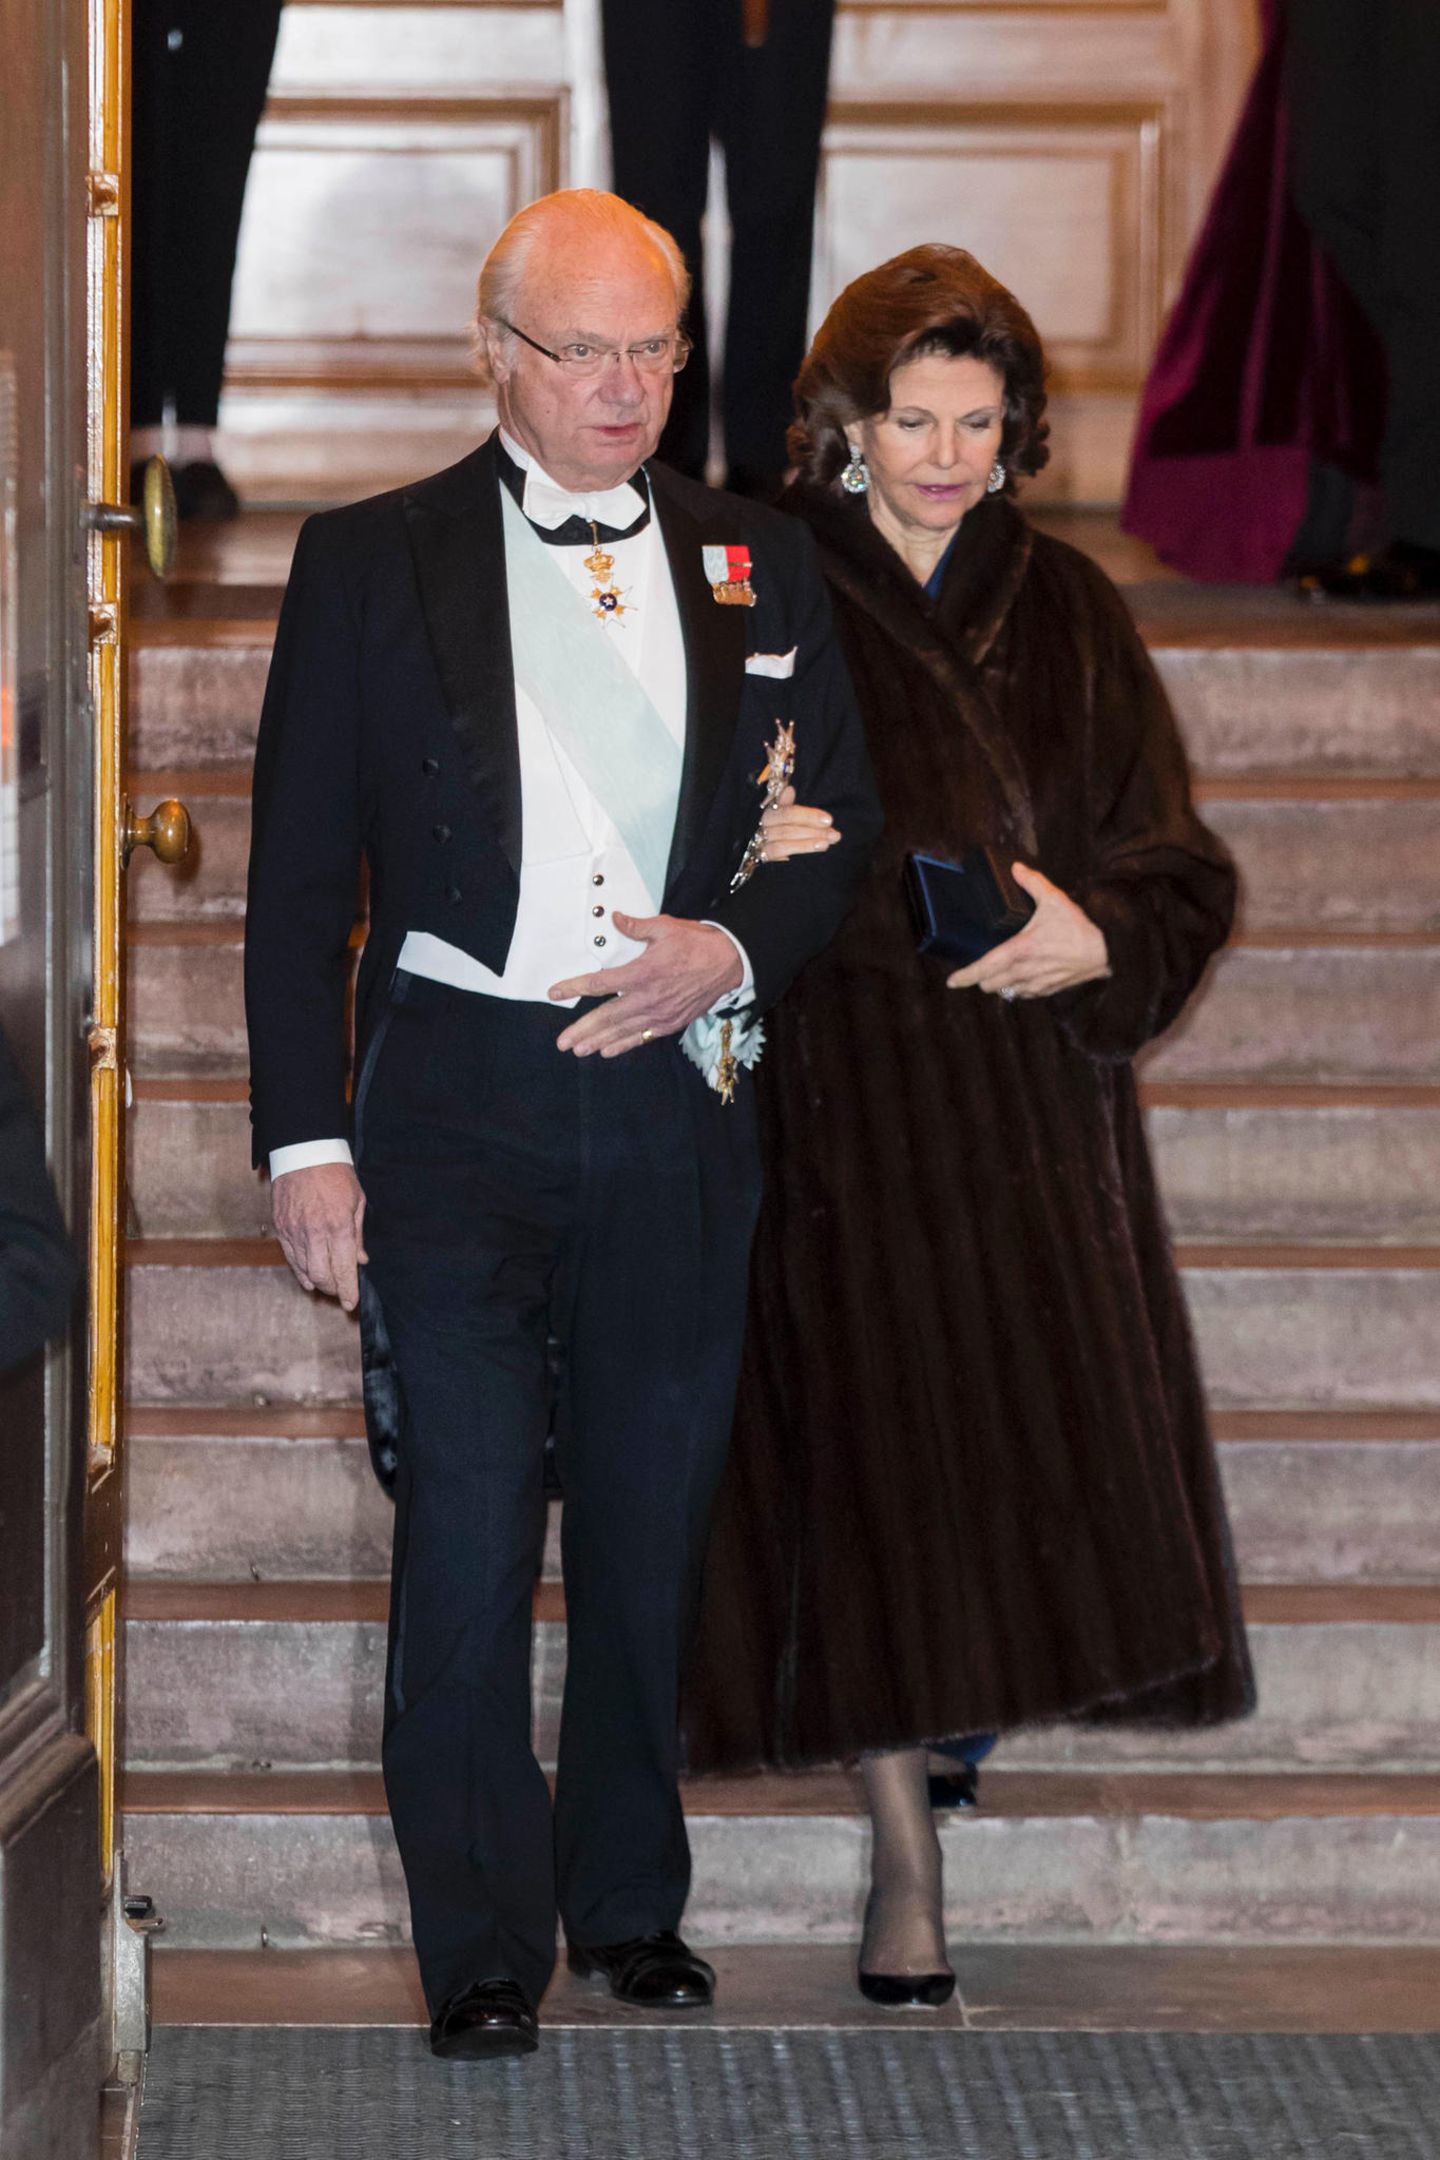 20. Dezember 2017  Das königliche Paar durfte bei der Veranstaltung natürlich nicht fehlen: Auf dem Schnappschuss sind König Carl Gustaf und Königin Silvia gerade beim Verlassen des Börshusets zu sehen. 